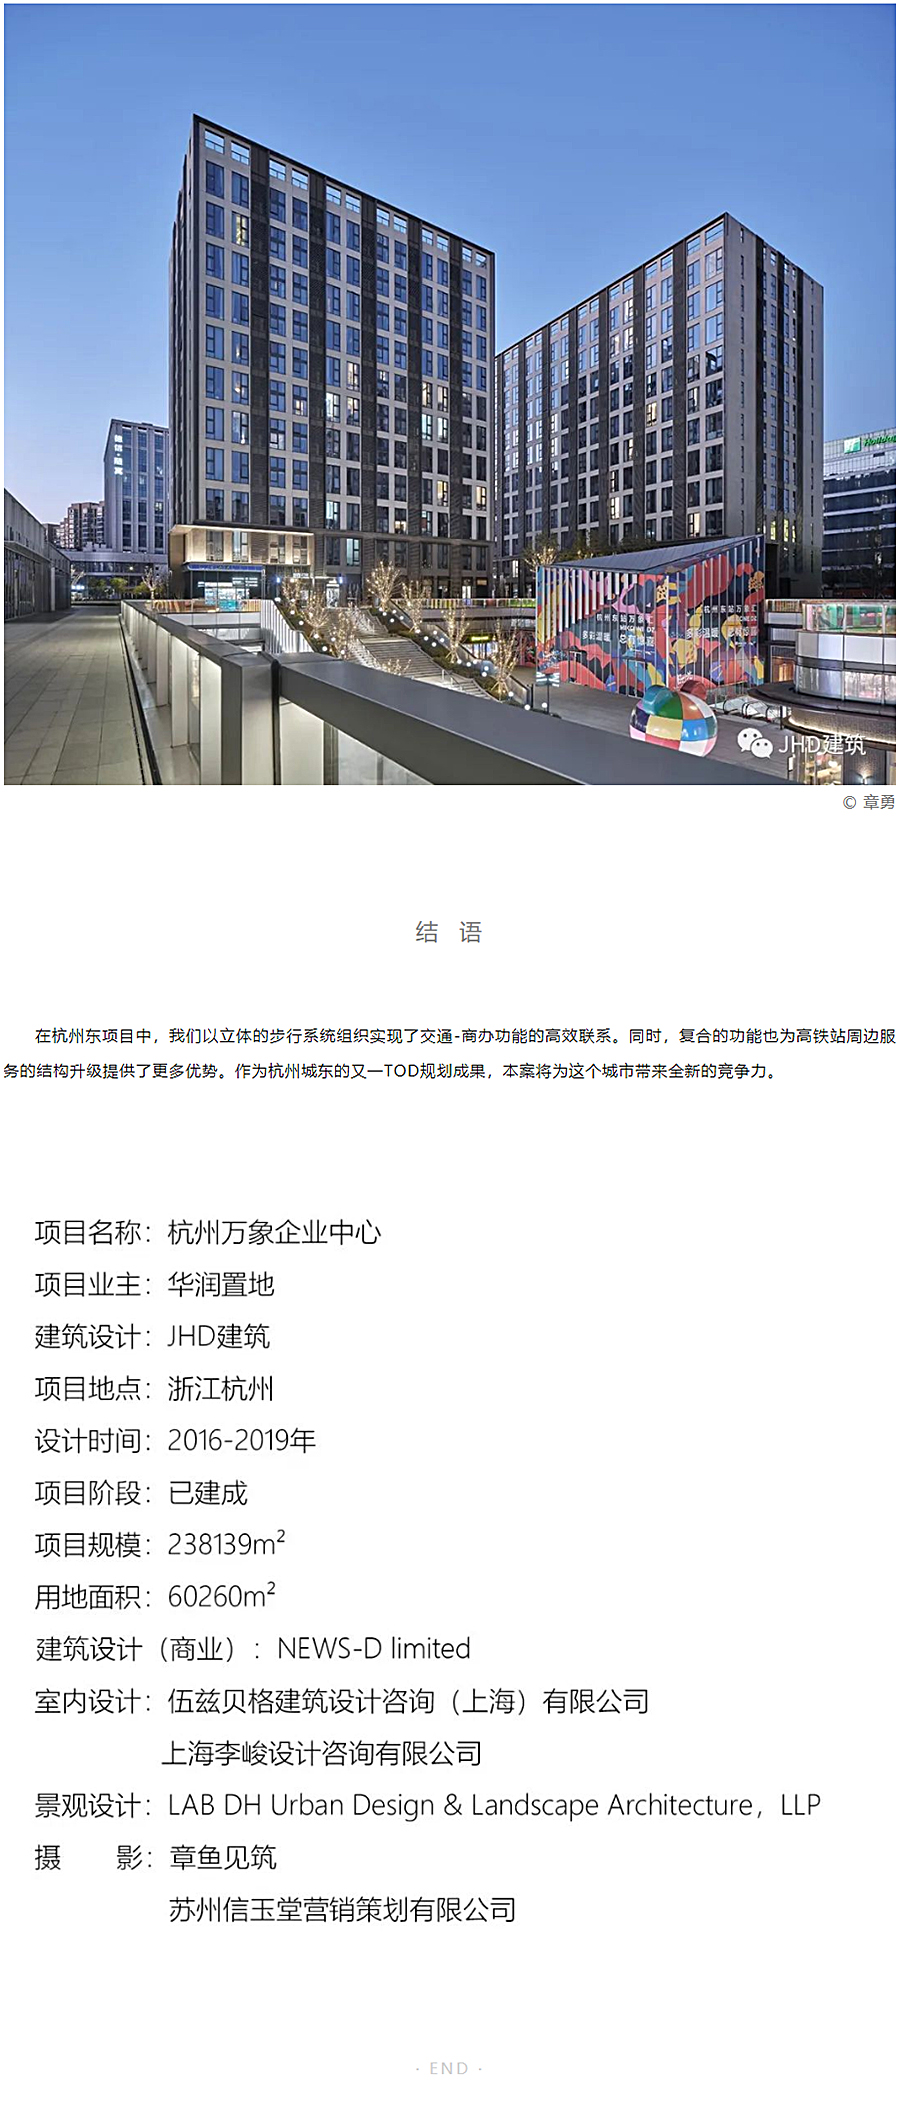 城站一体的TOD空间设计策略-_-杭州东站万象汇_0011_图层-12.jpg